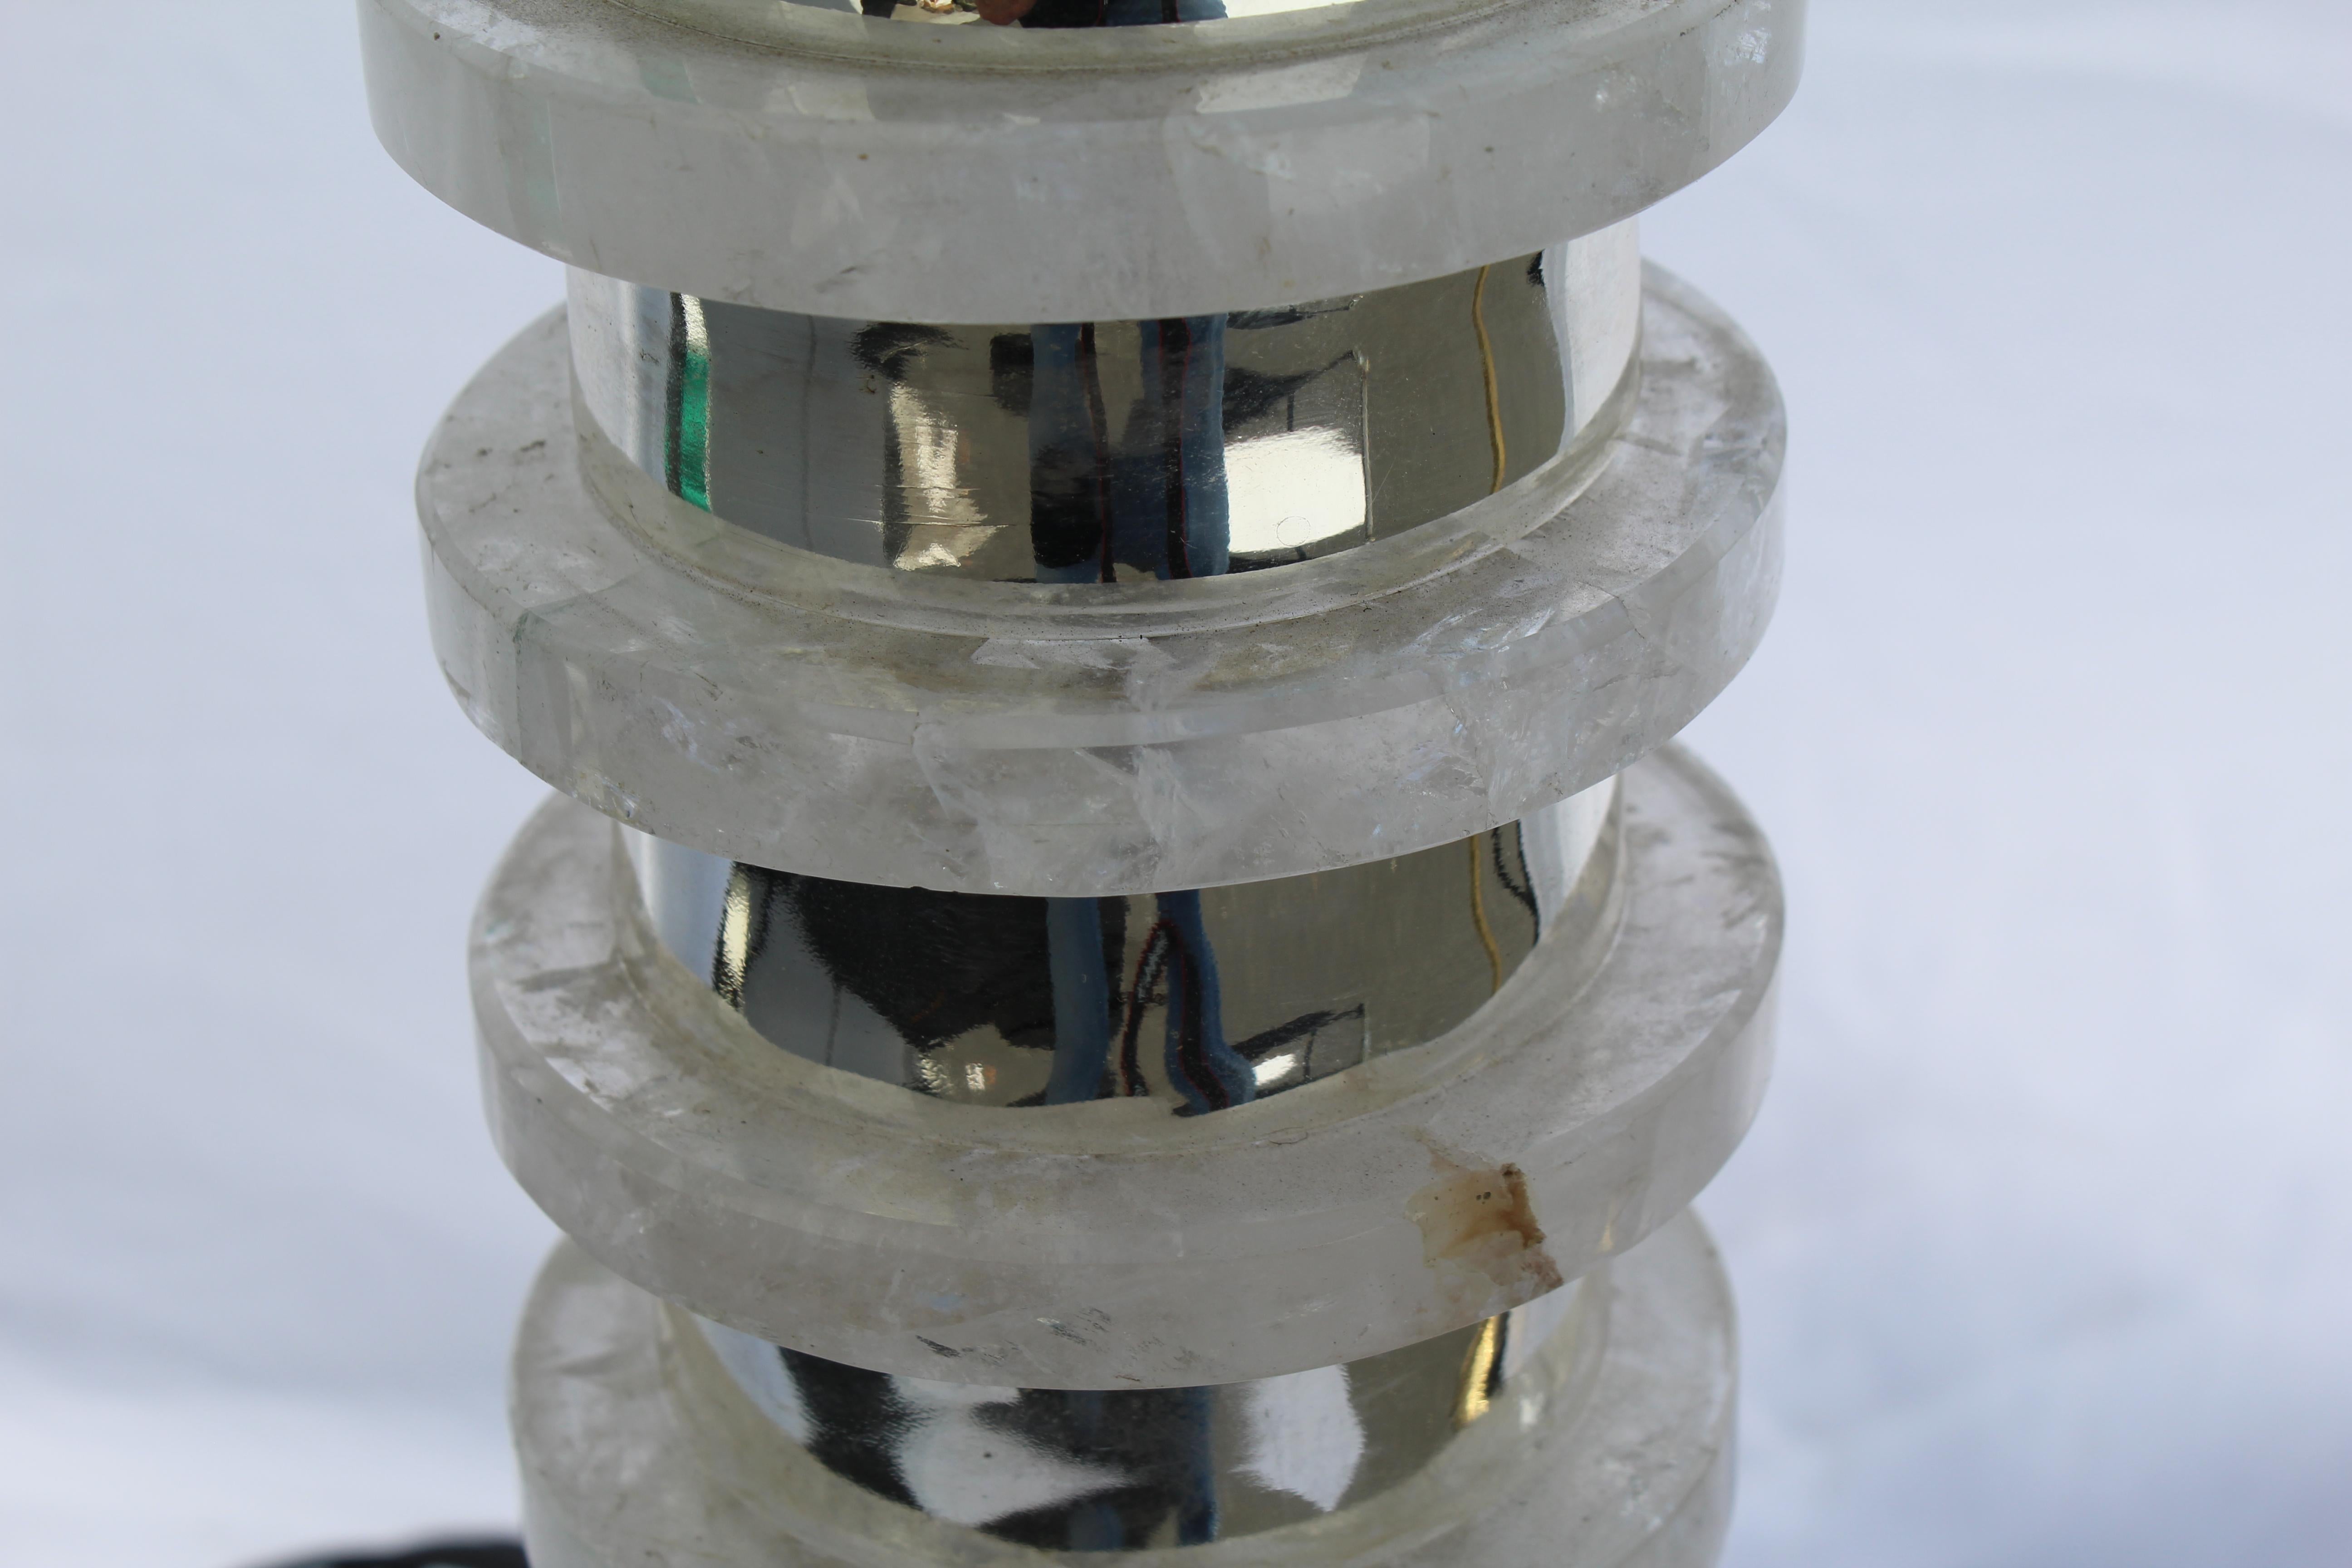 Une lampe déco/moderne faite de disques de cristal de roche empilés, fabriquée au Brésil. Chaque disque est séparé par une entretoise en métal nickelé hautement polie. Le tout est monté sur une base en marbre noir absolu de 6